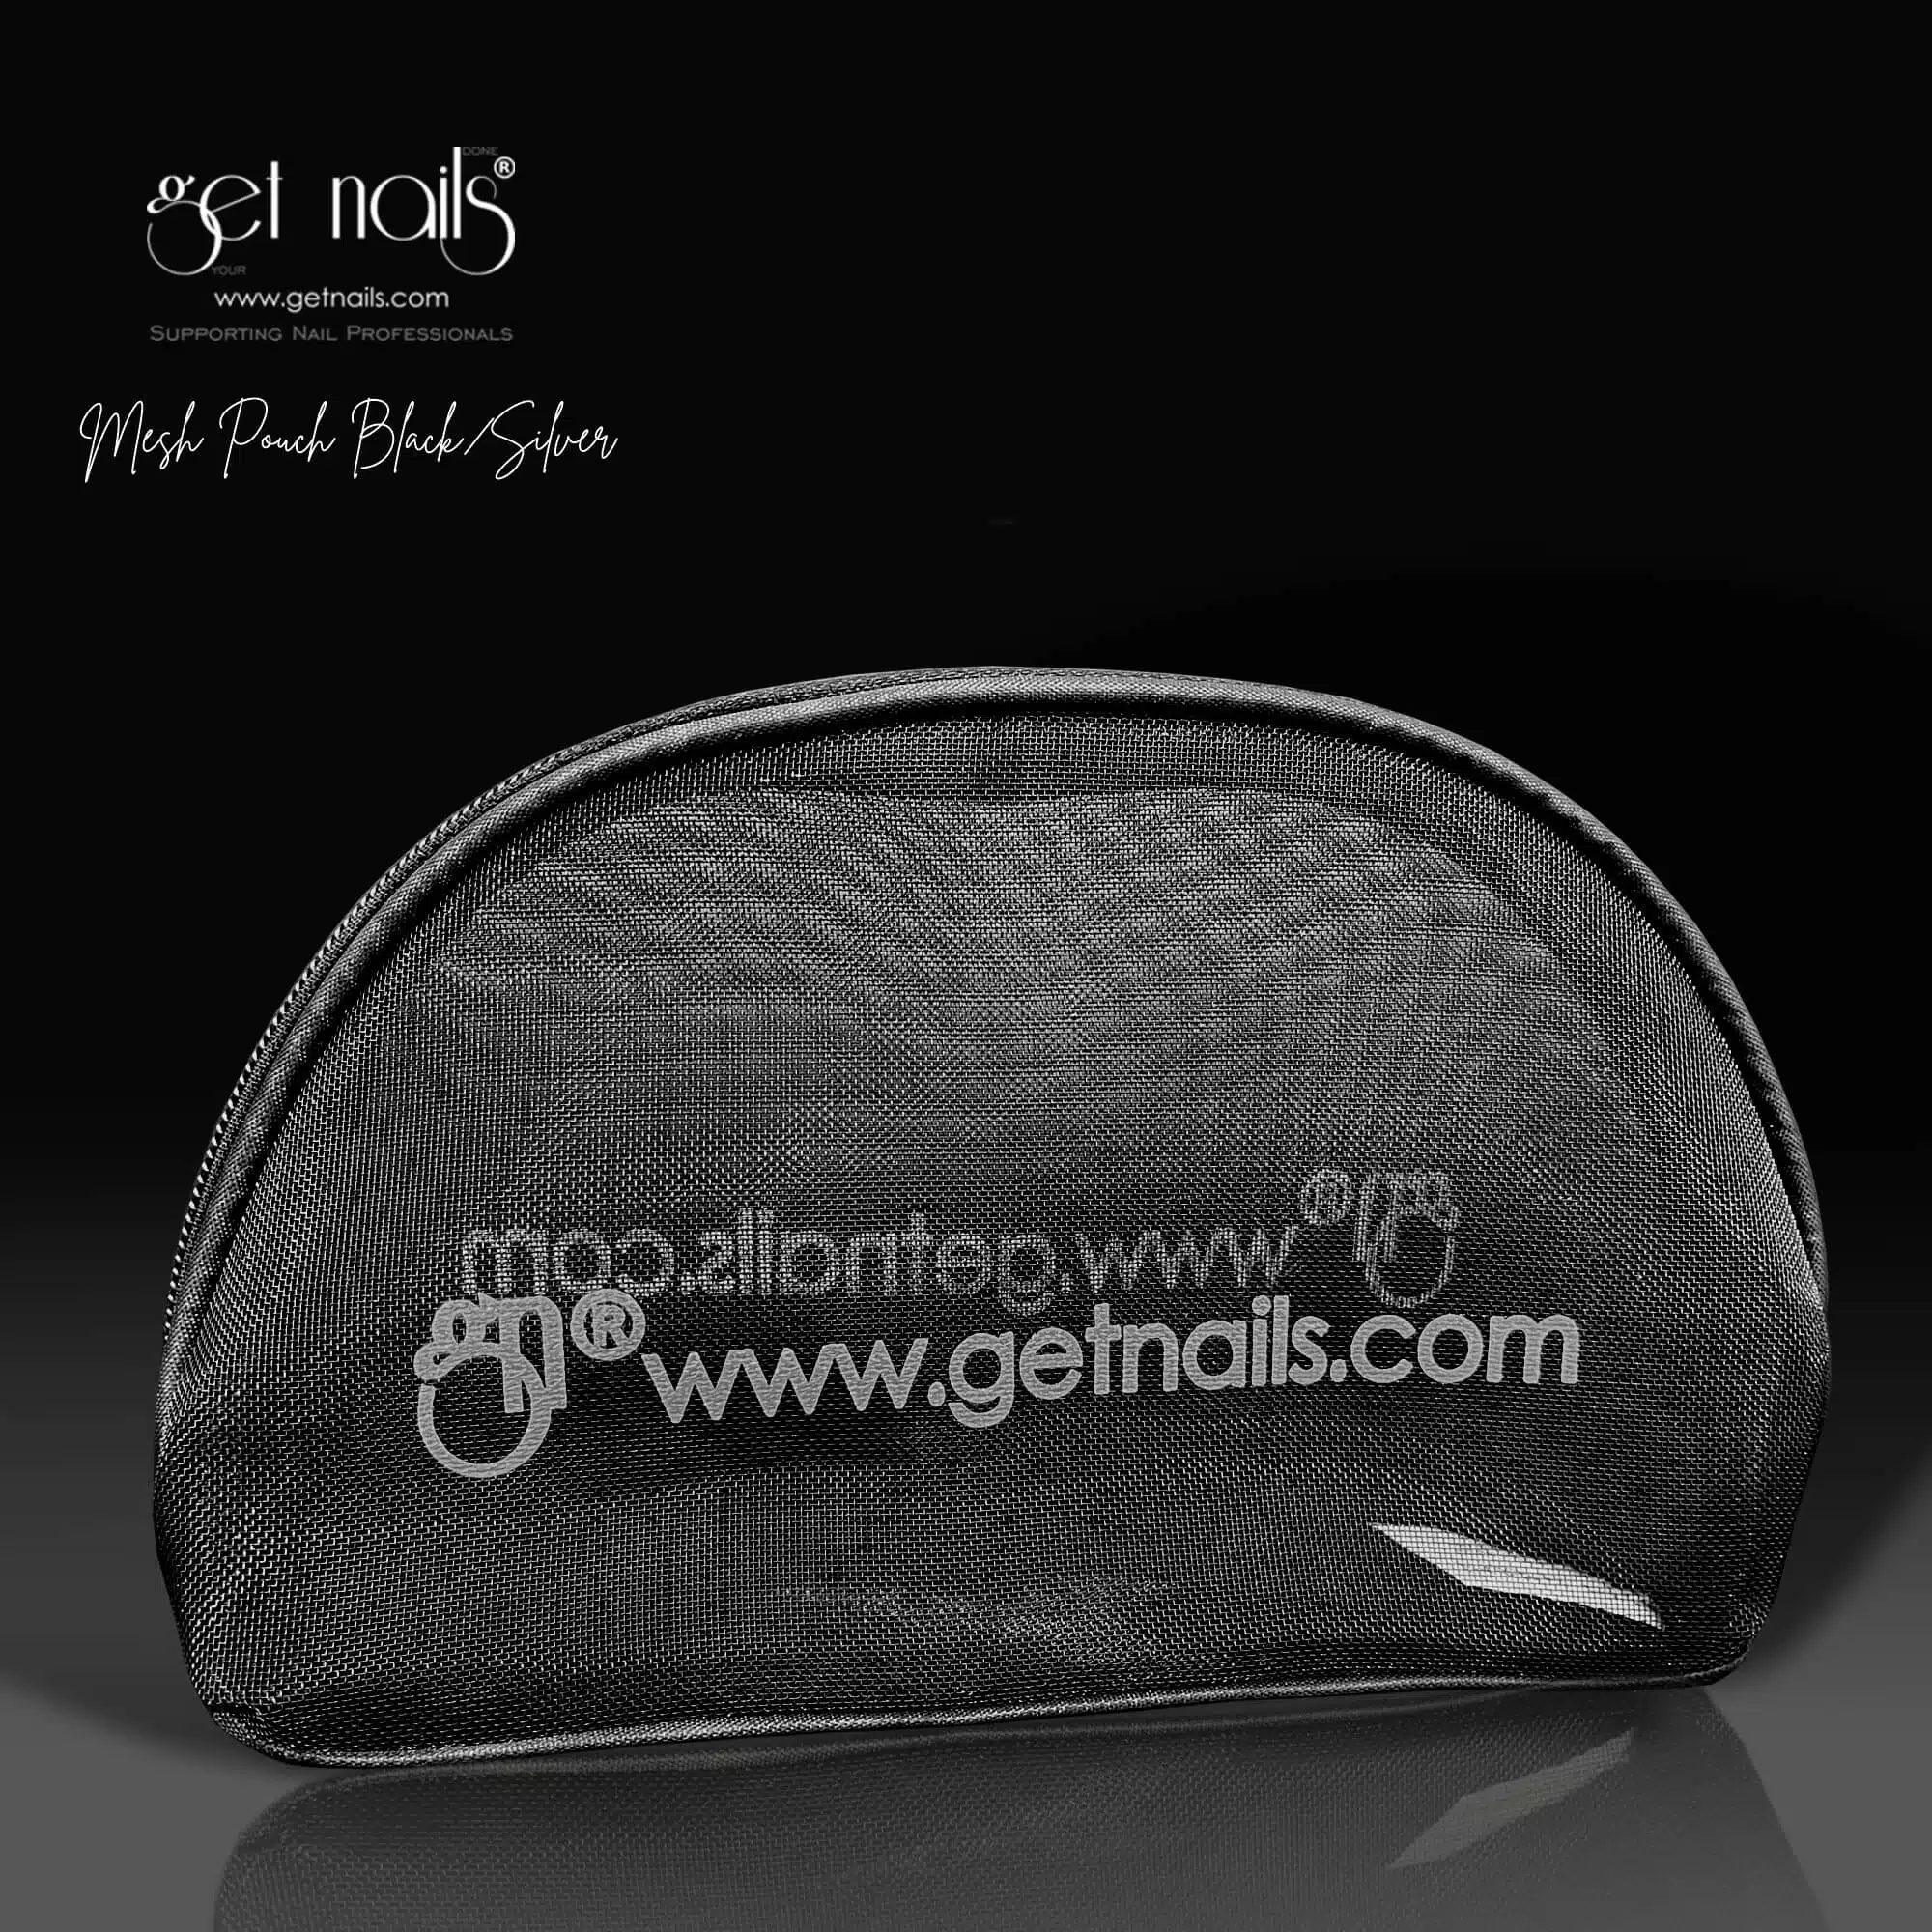 Get Nails Austria - сетчатая сумка, черный/серебристый